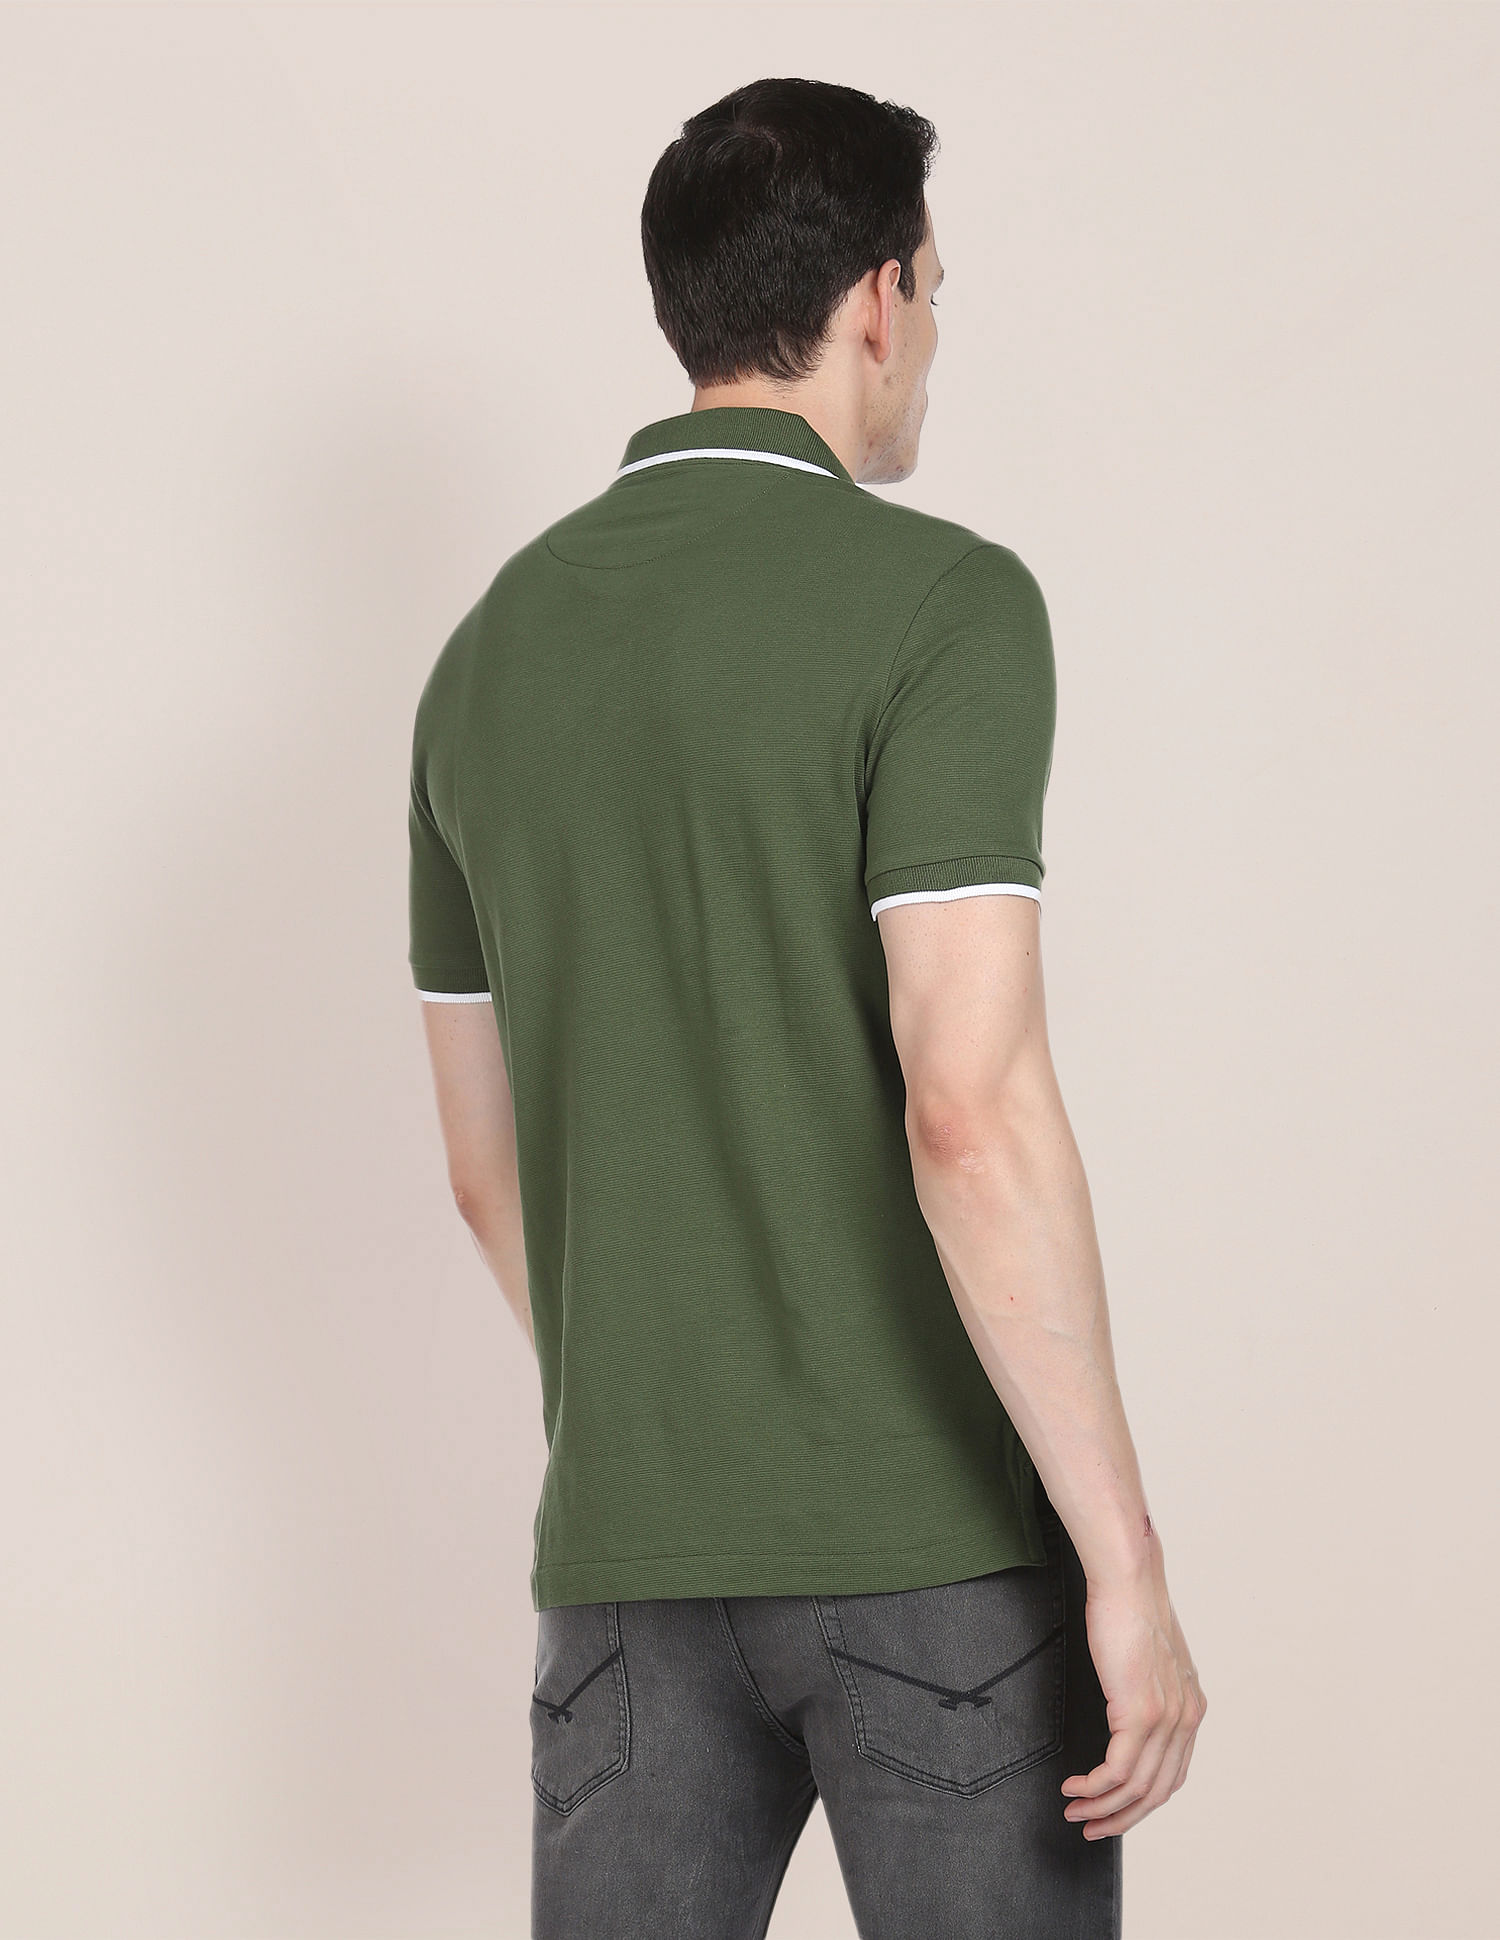 U.S. Polo Assn. Mandarin Collar Luxury Polo Shirt, Green (XL)